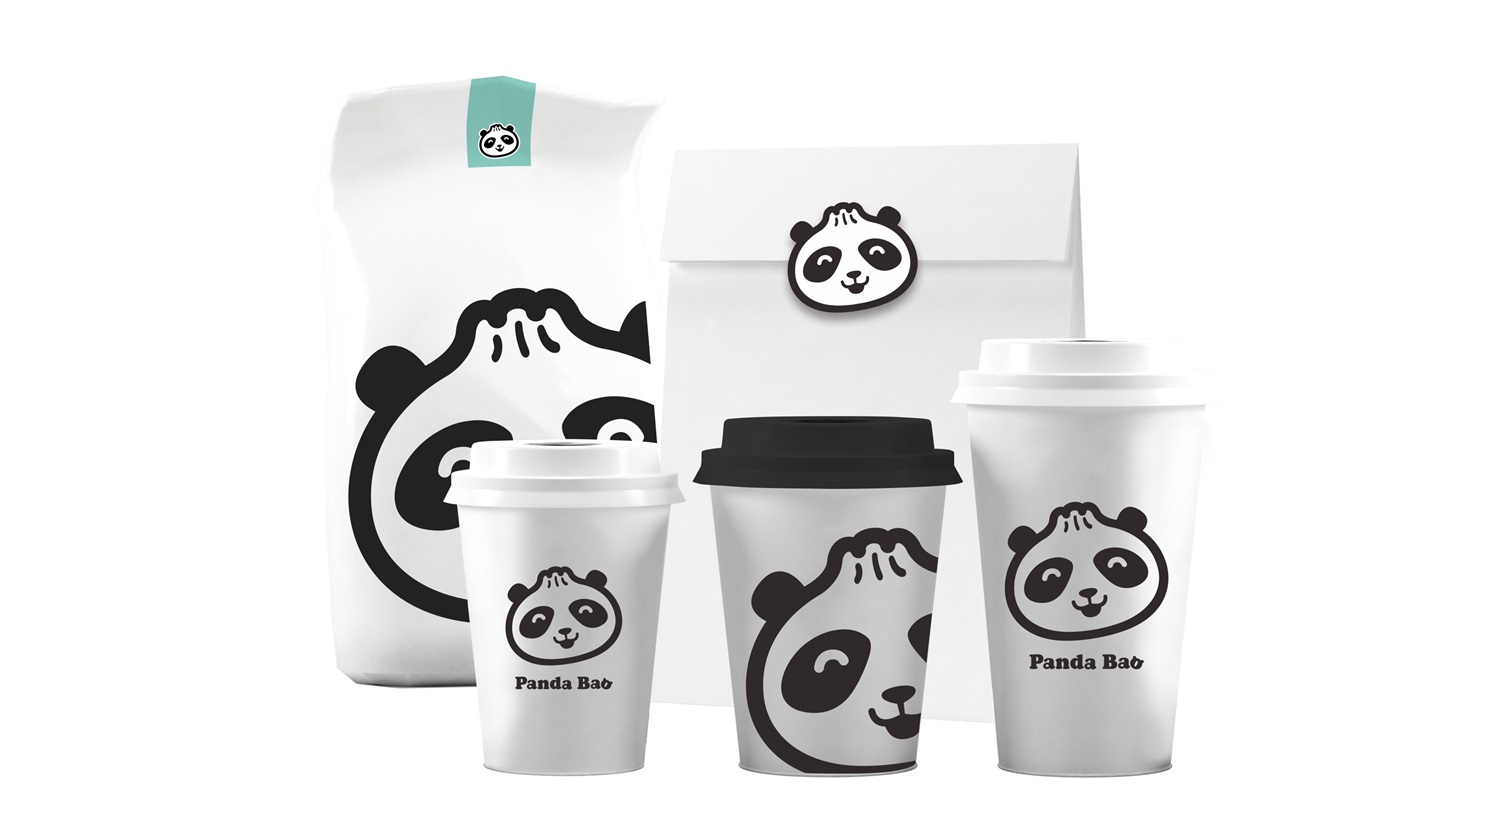 国外水煎包连锁餐饮品牌Panda Bao饮料杯设计